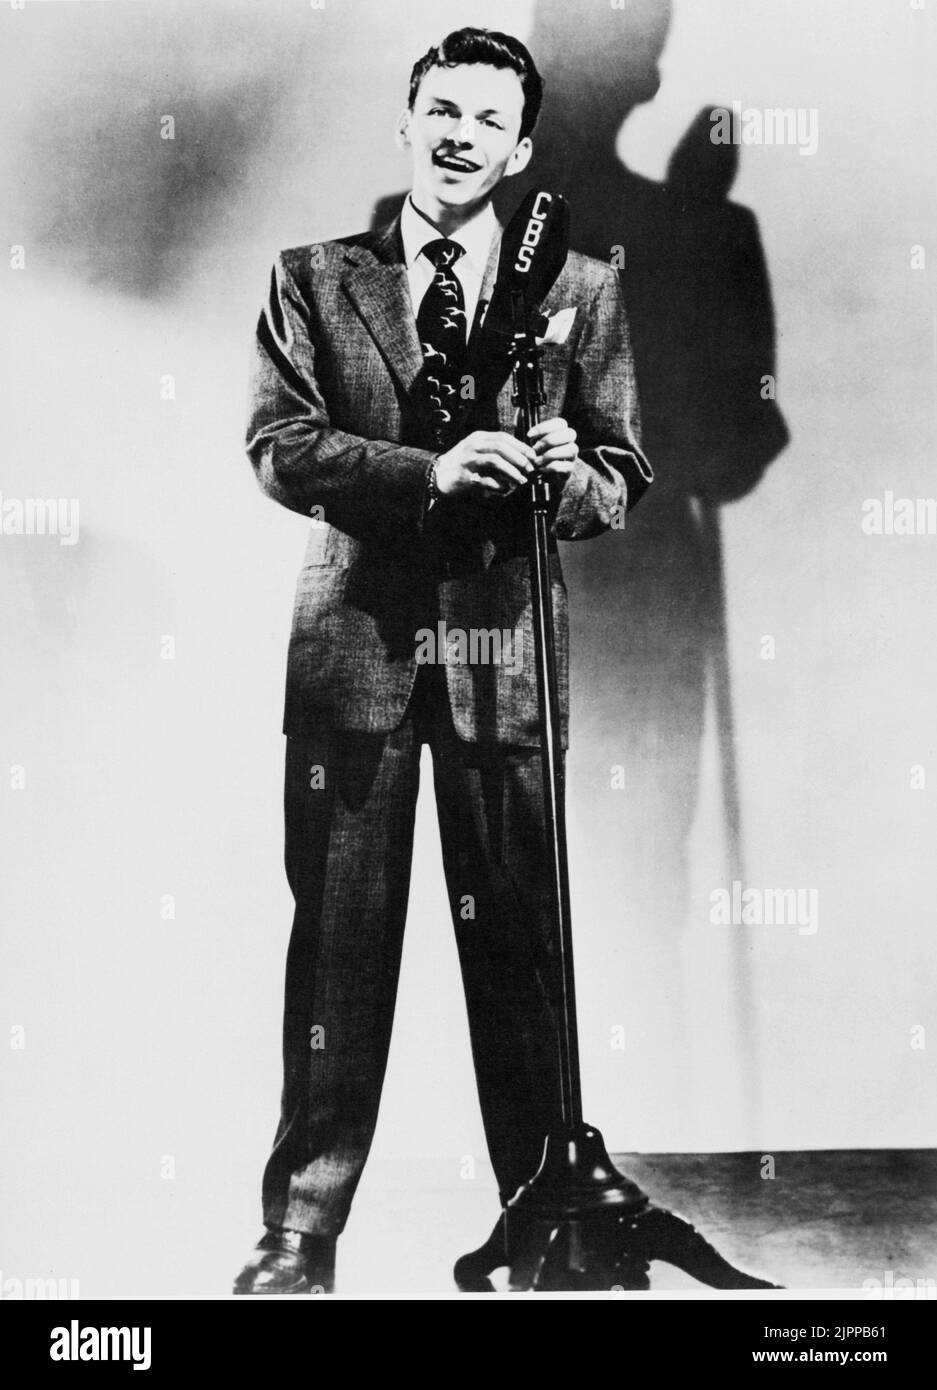 1949 ca., USA  : The movie actor and singer  FRANK SINATRA ( 1915 - 1998 ) THE VOICE  - portrait - ritratto - microfono - radio - microphone - cantante - cravatta - tie  ----  Archivio GBB Stock Photo